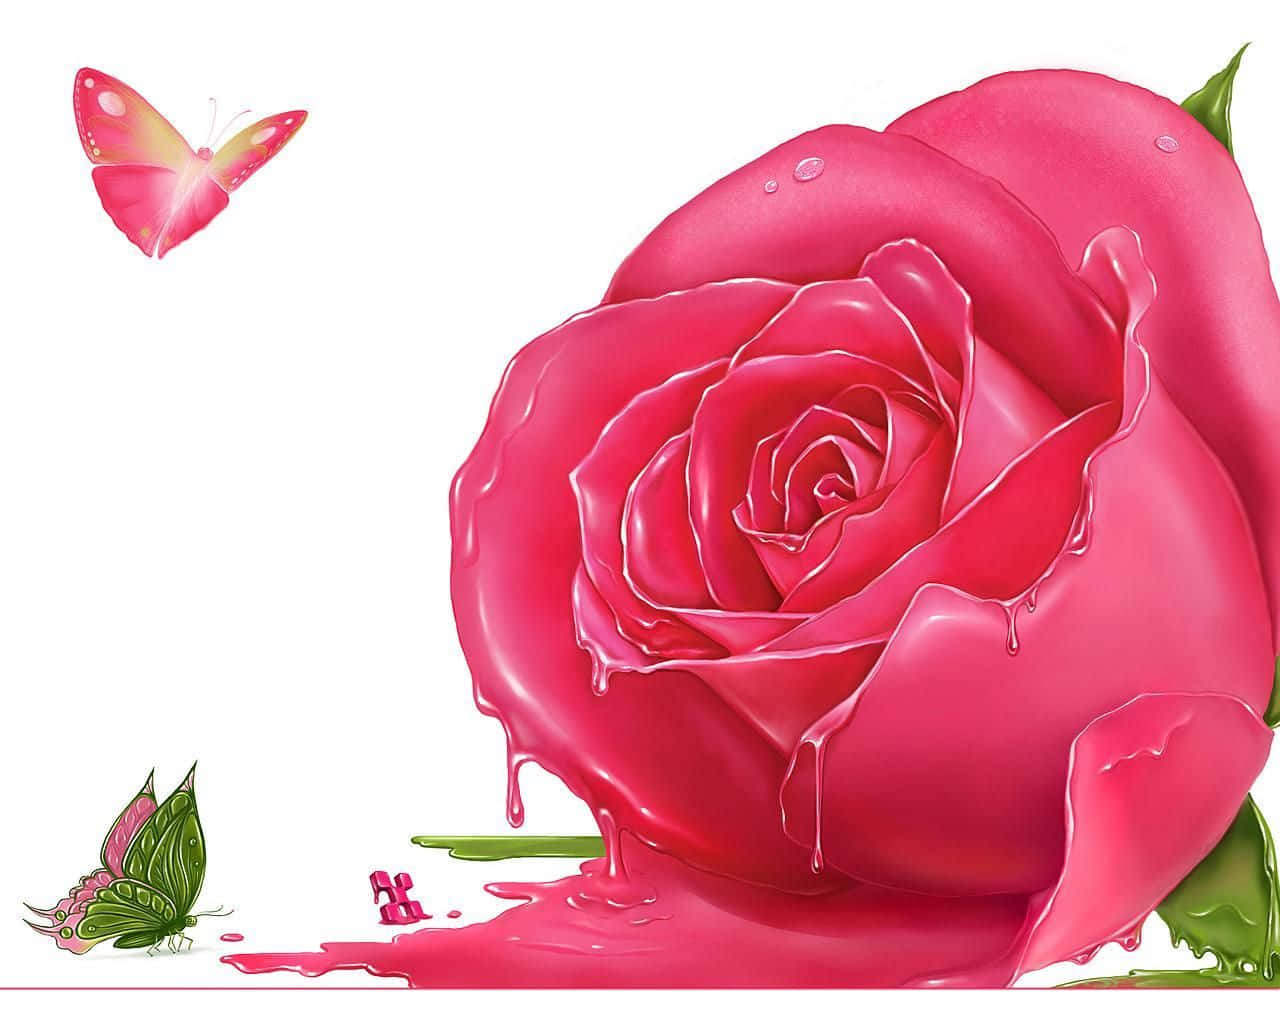 Melting Pink Rose Background